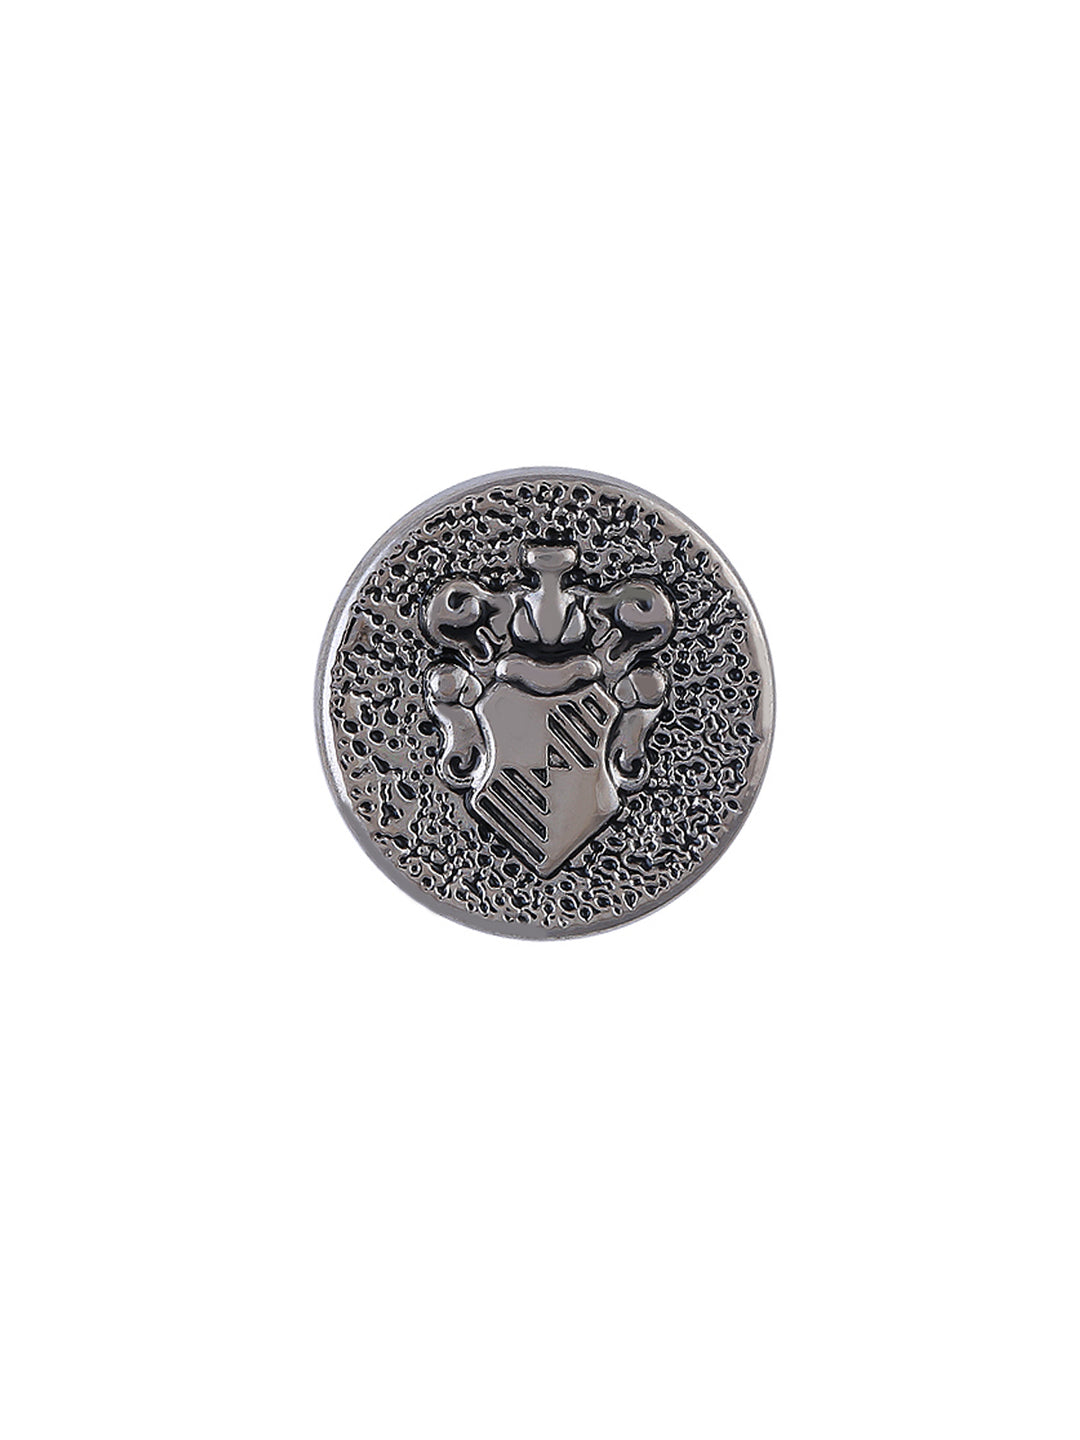 Designer Engraved Design Coat Shank Silver Color Button